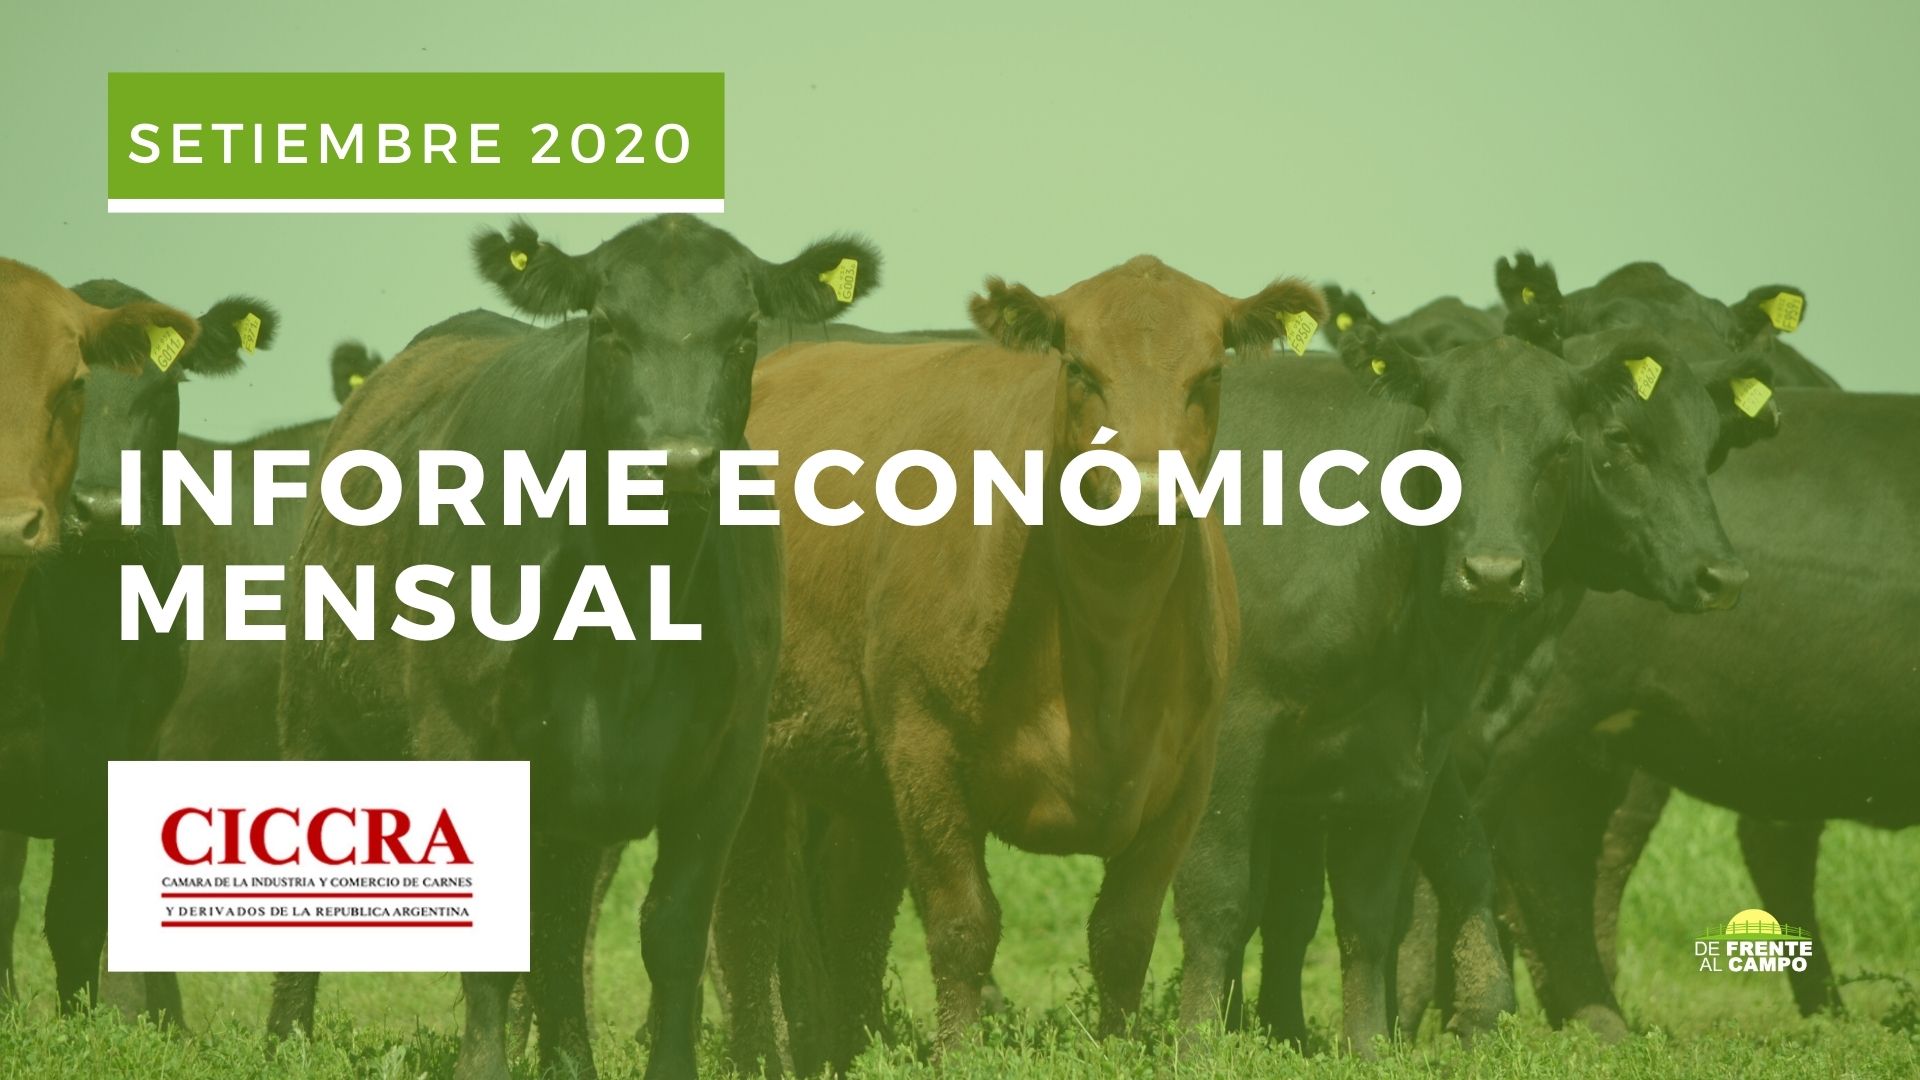 Informe económico Nro 236 Mensual de CICCRA – Setiembre 2020